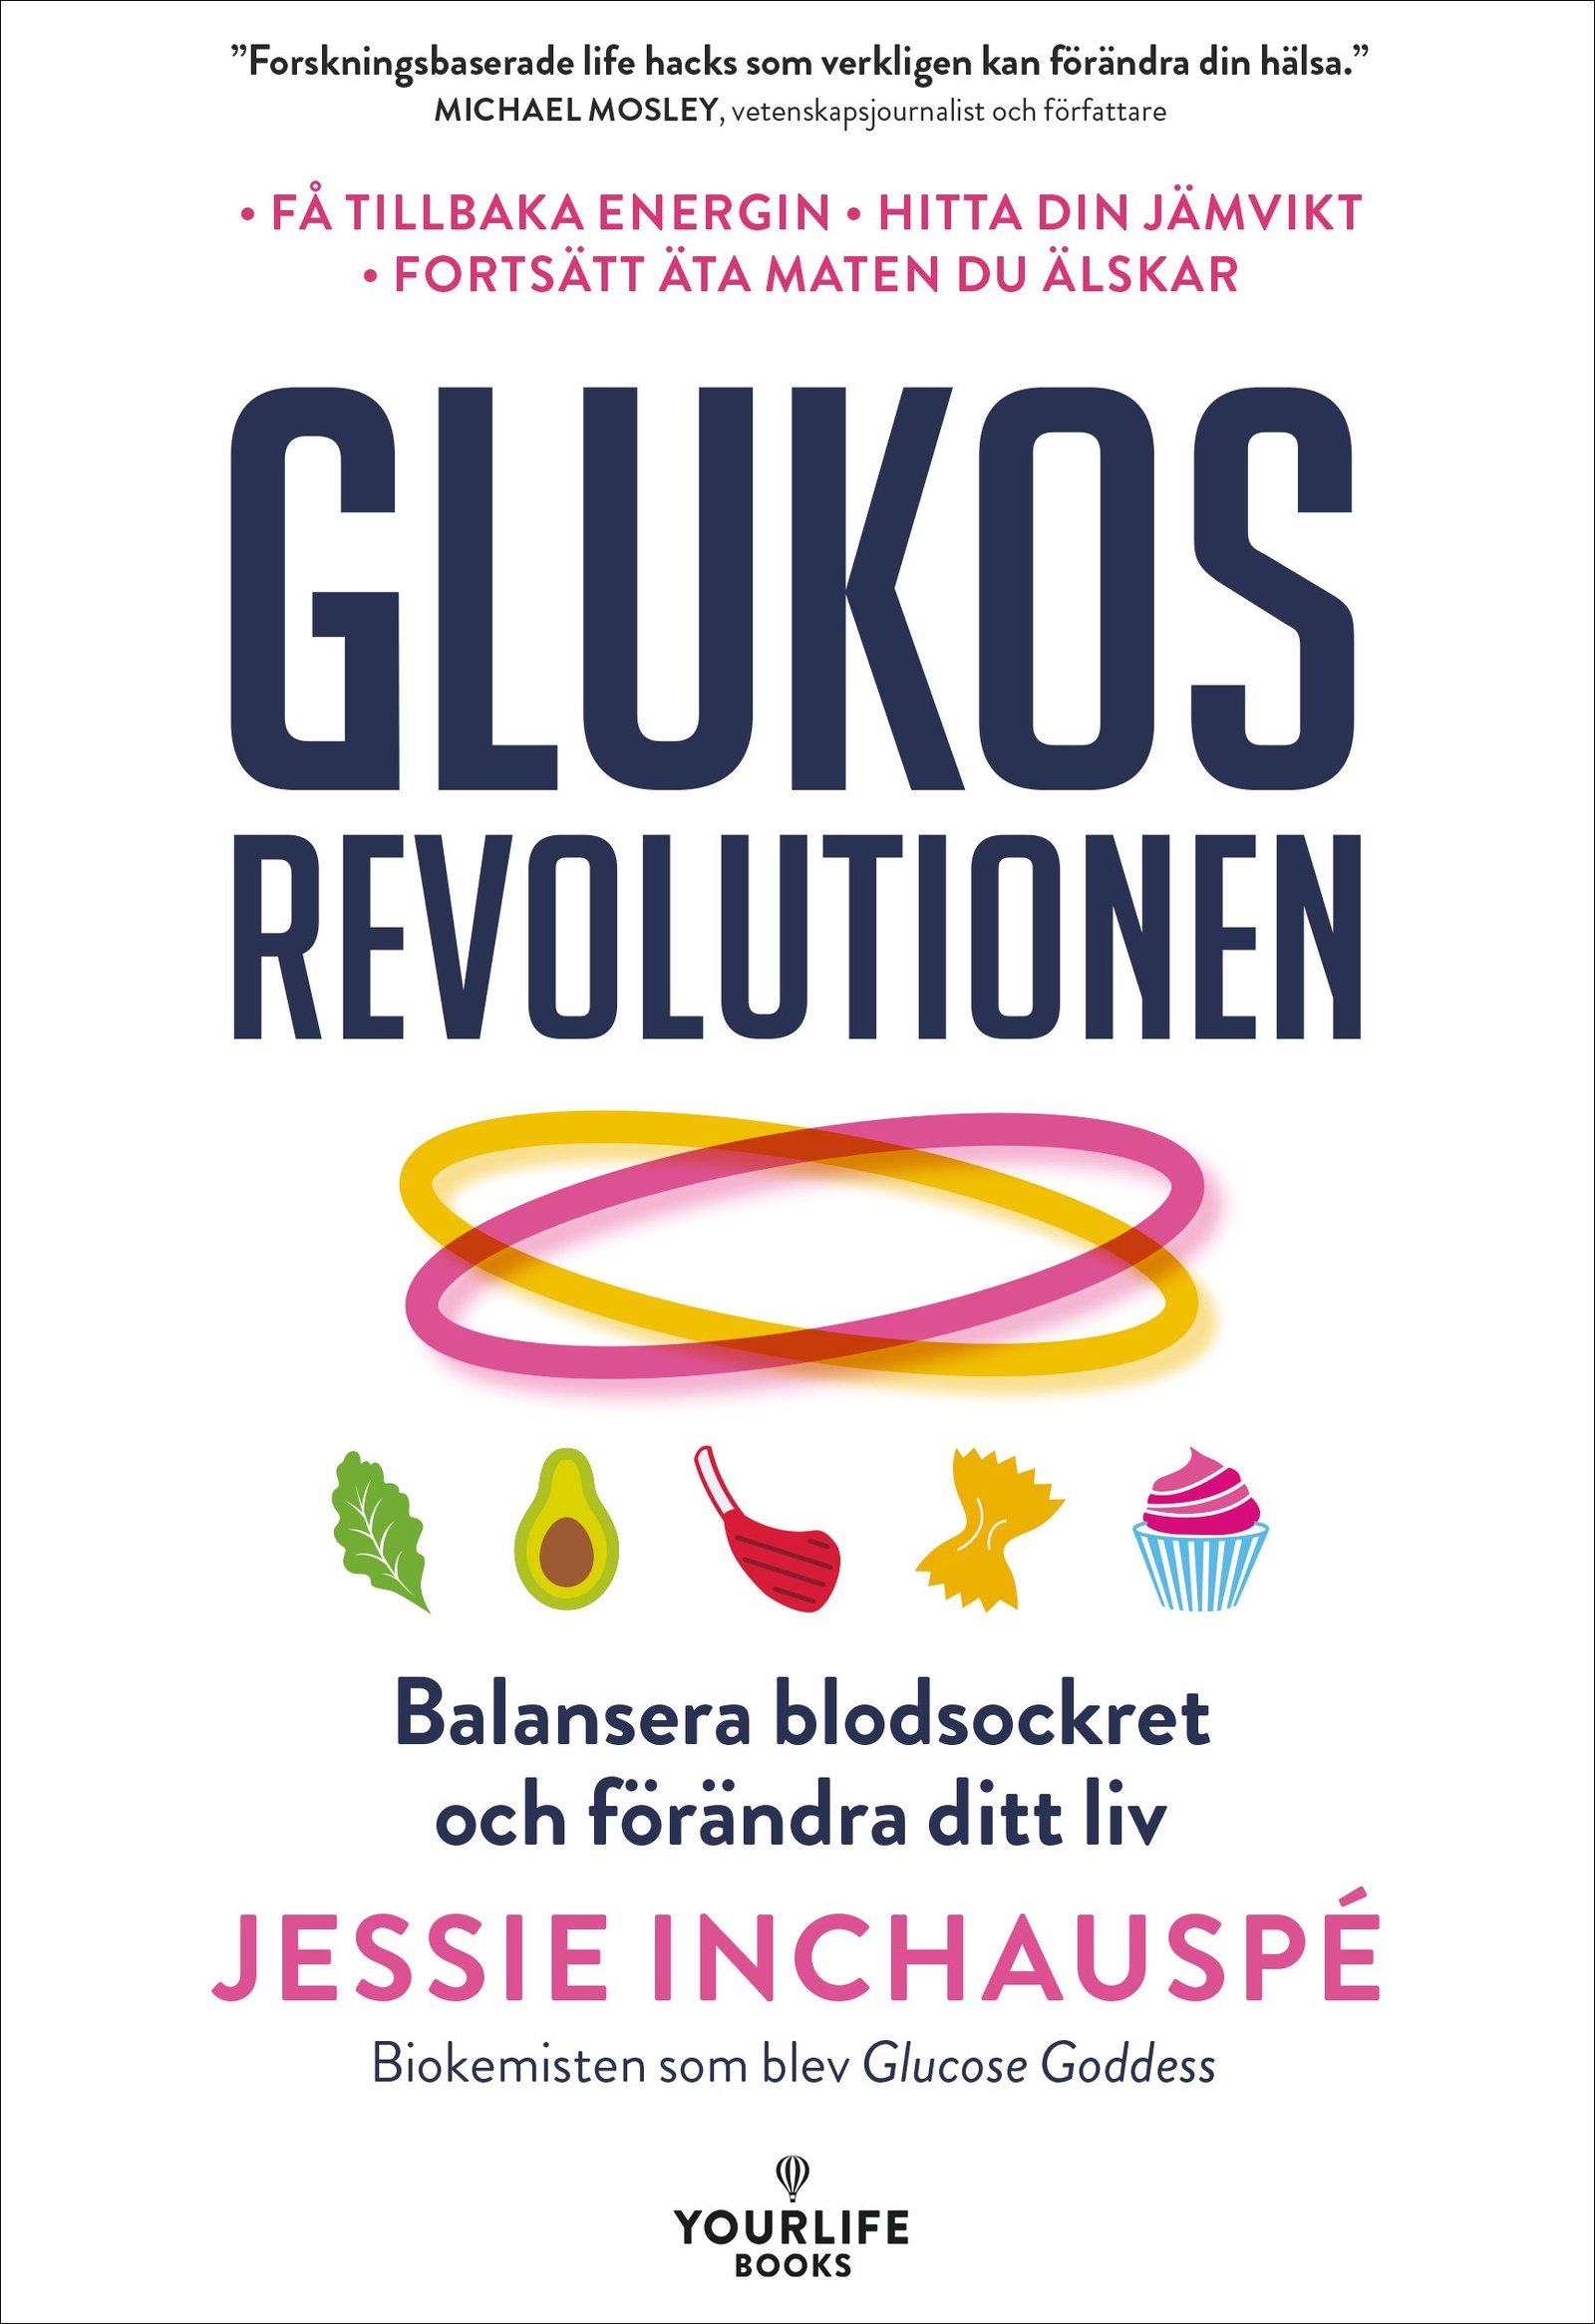 Glukosrevolutionen: balansera ditt blodsocker och förändra ditt liv